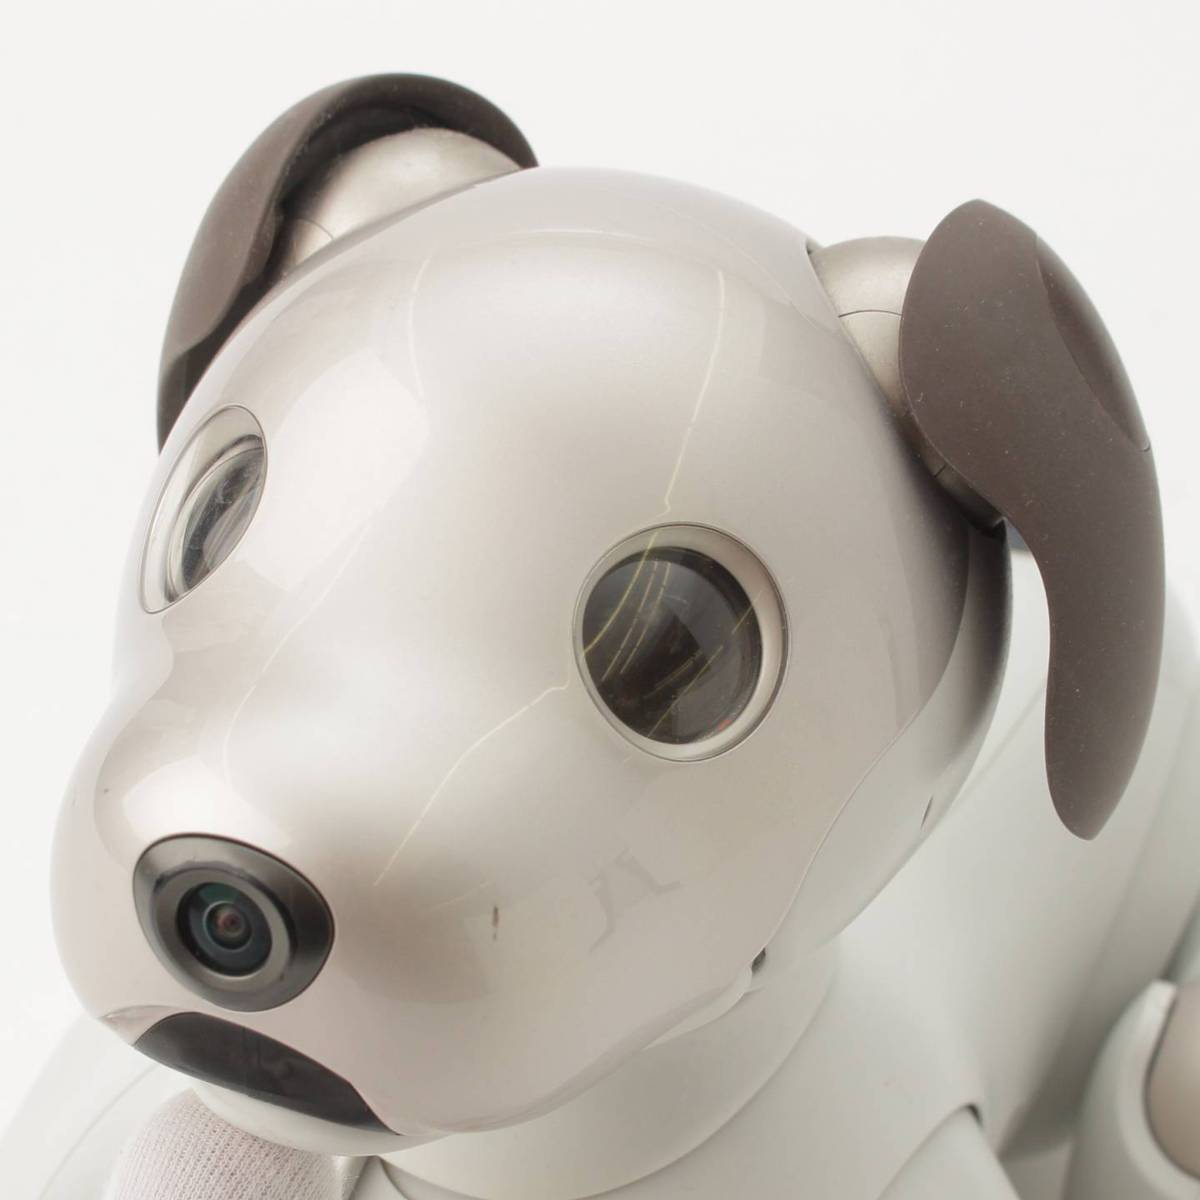 ソニー アイボ ERS-1000 AIBO 犬型 ロボット ペット SONY